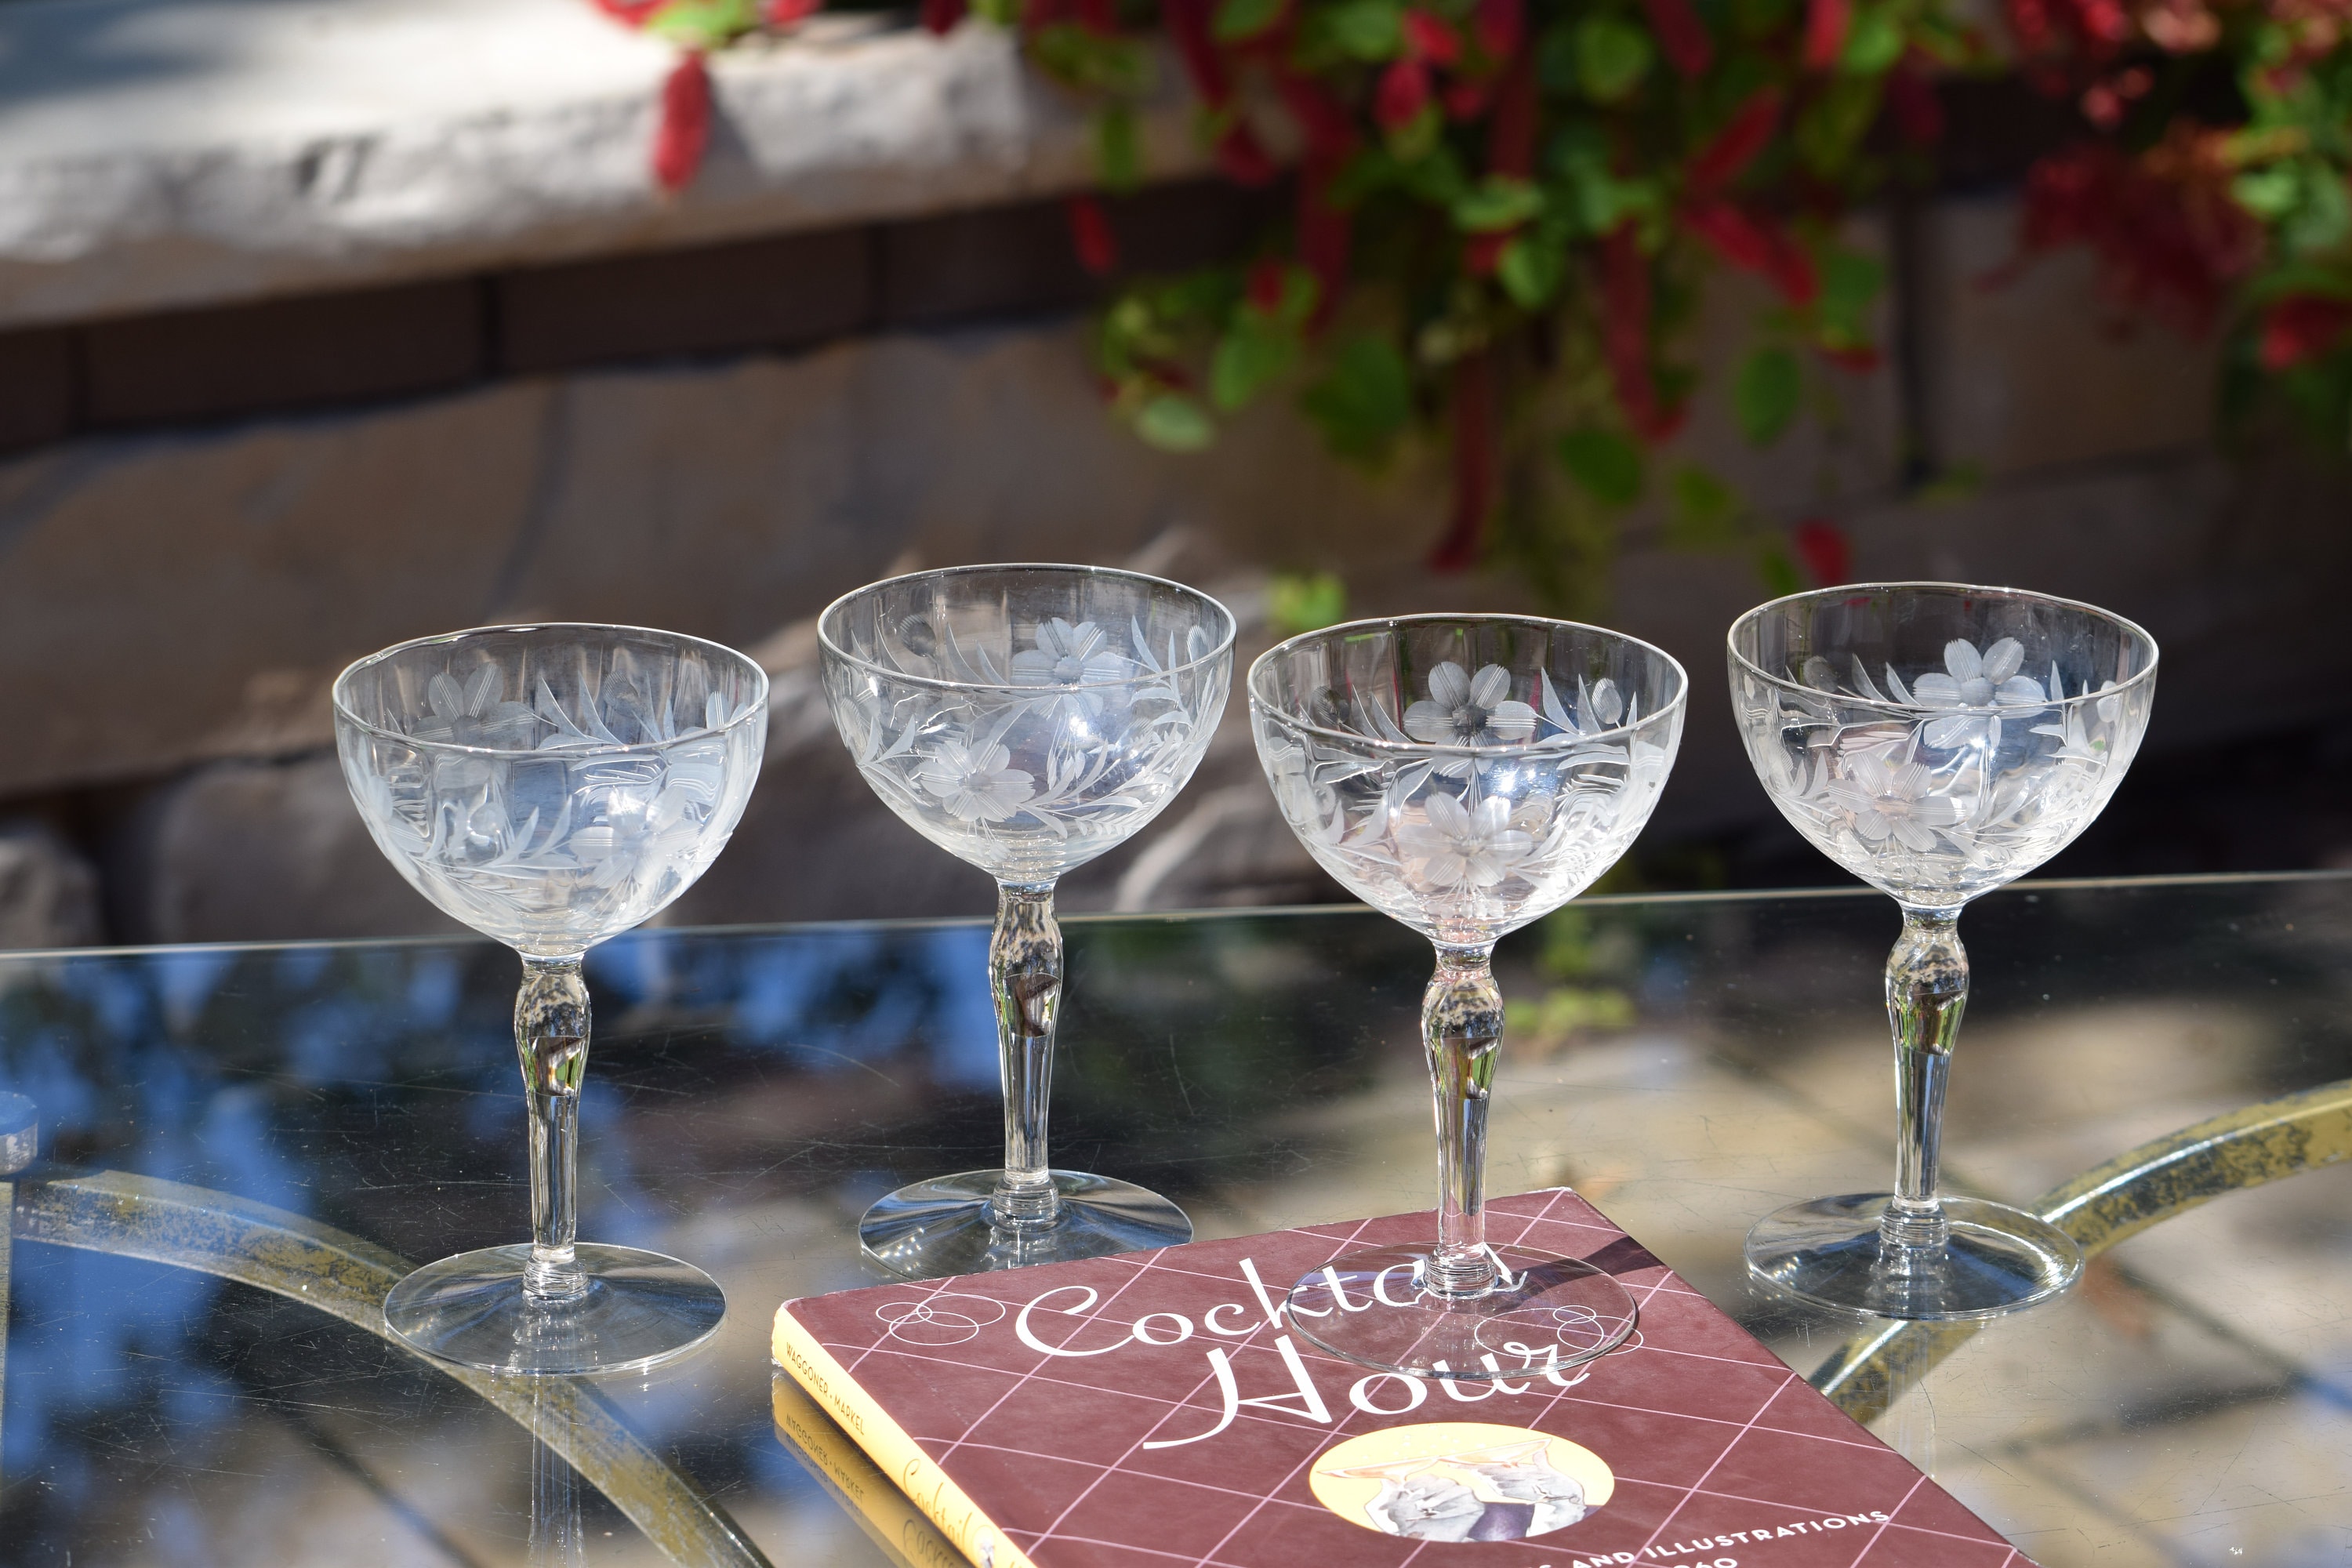 4 Vintage Etched Cocktail - Martini Glasses, 1950's, Nick & Nora Coupes,  Vintage Etched Champagne Glasses, Home Bartender Mixology